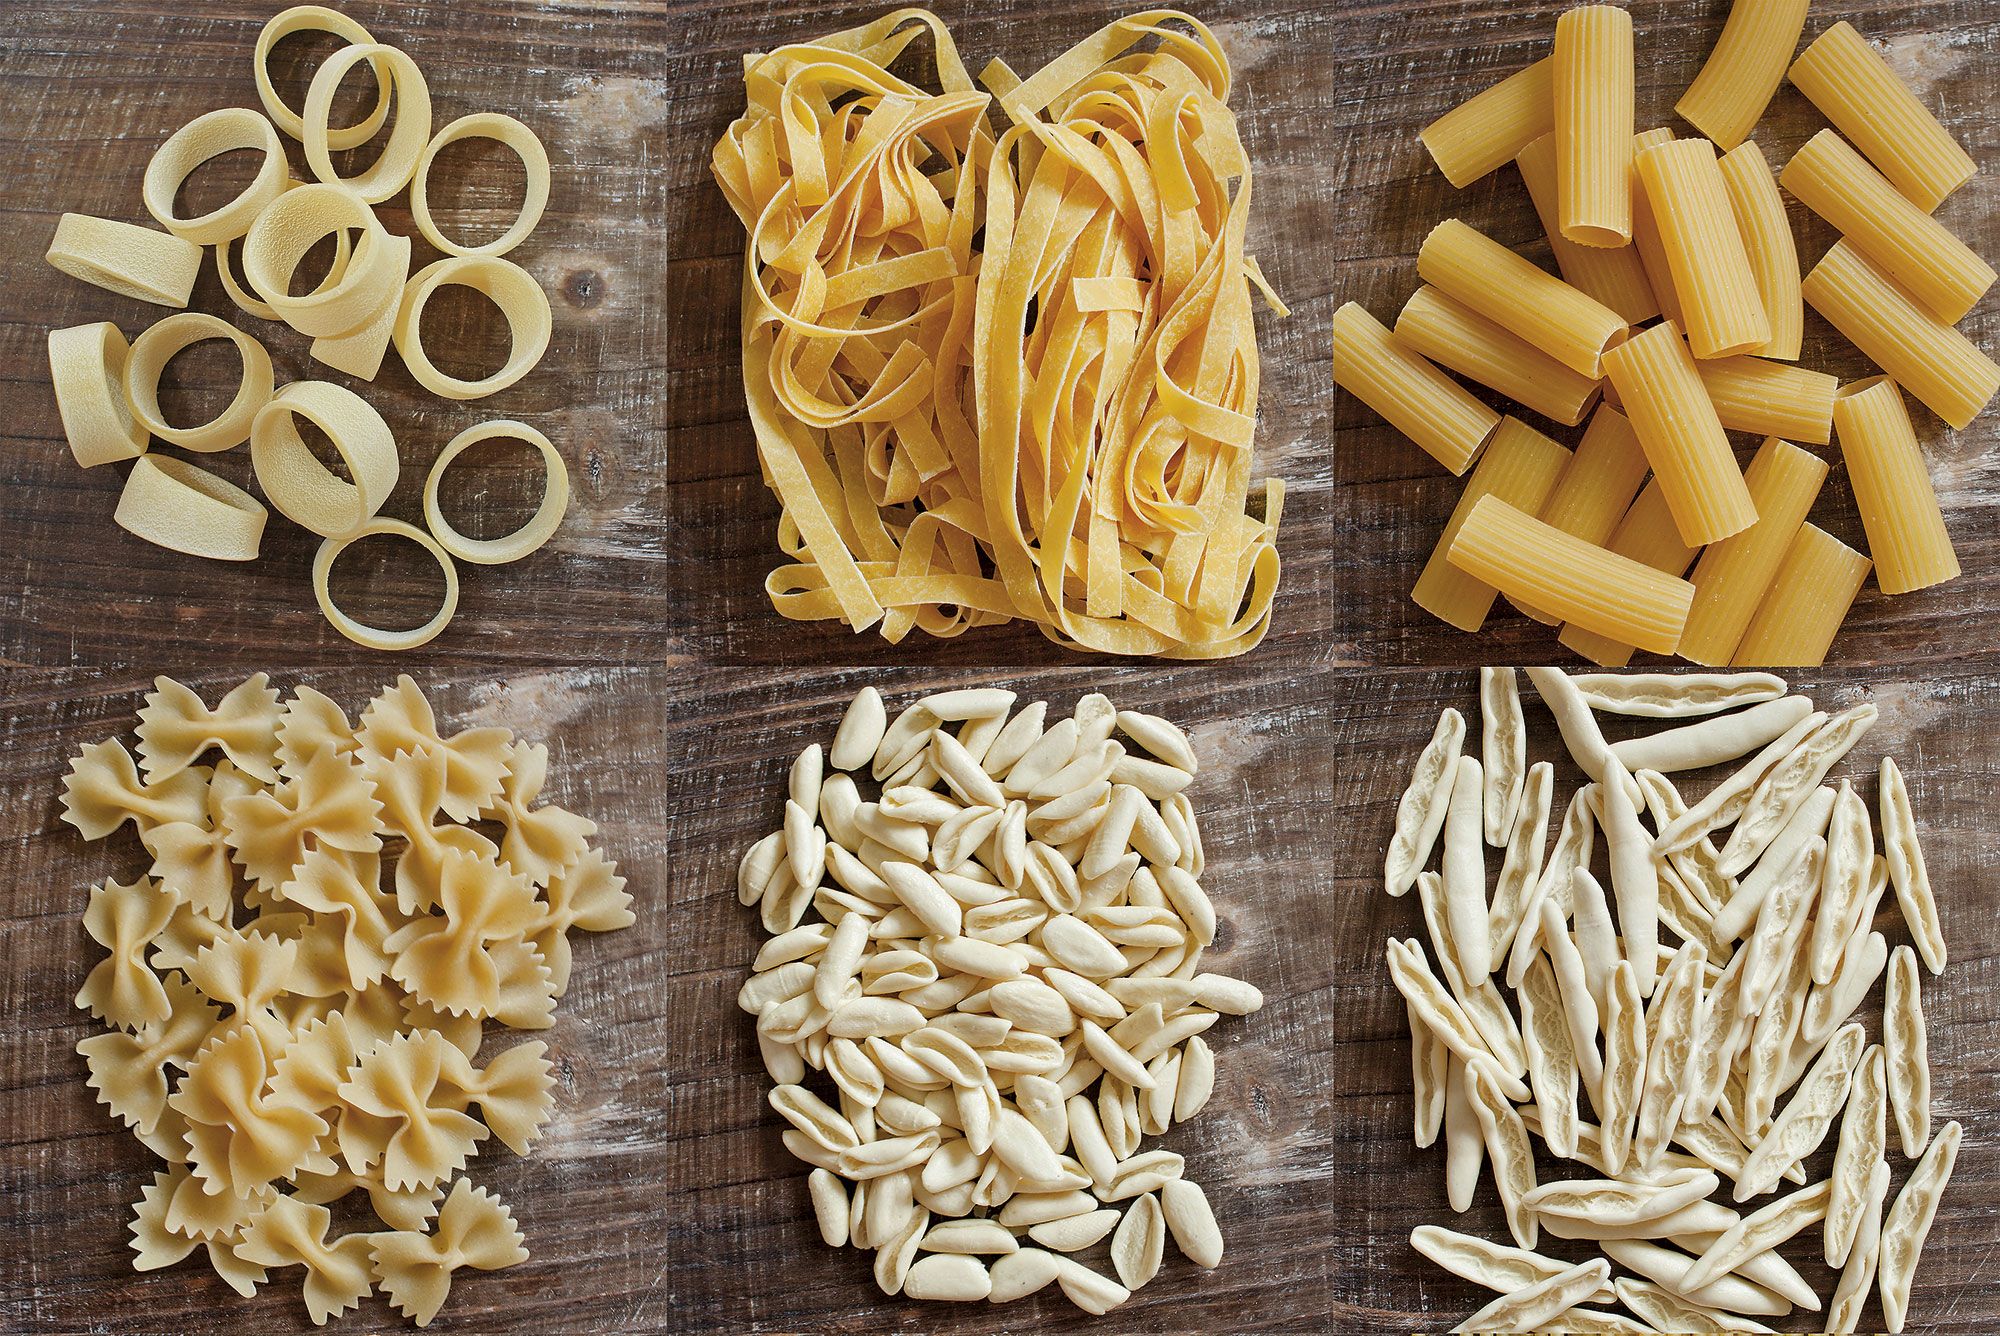 Cómo elegir una buena pasta fresca rellena?